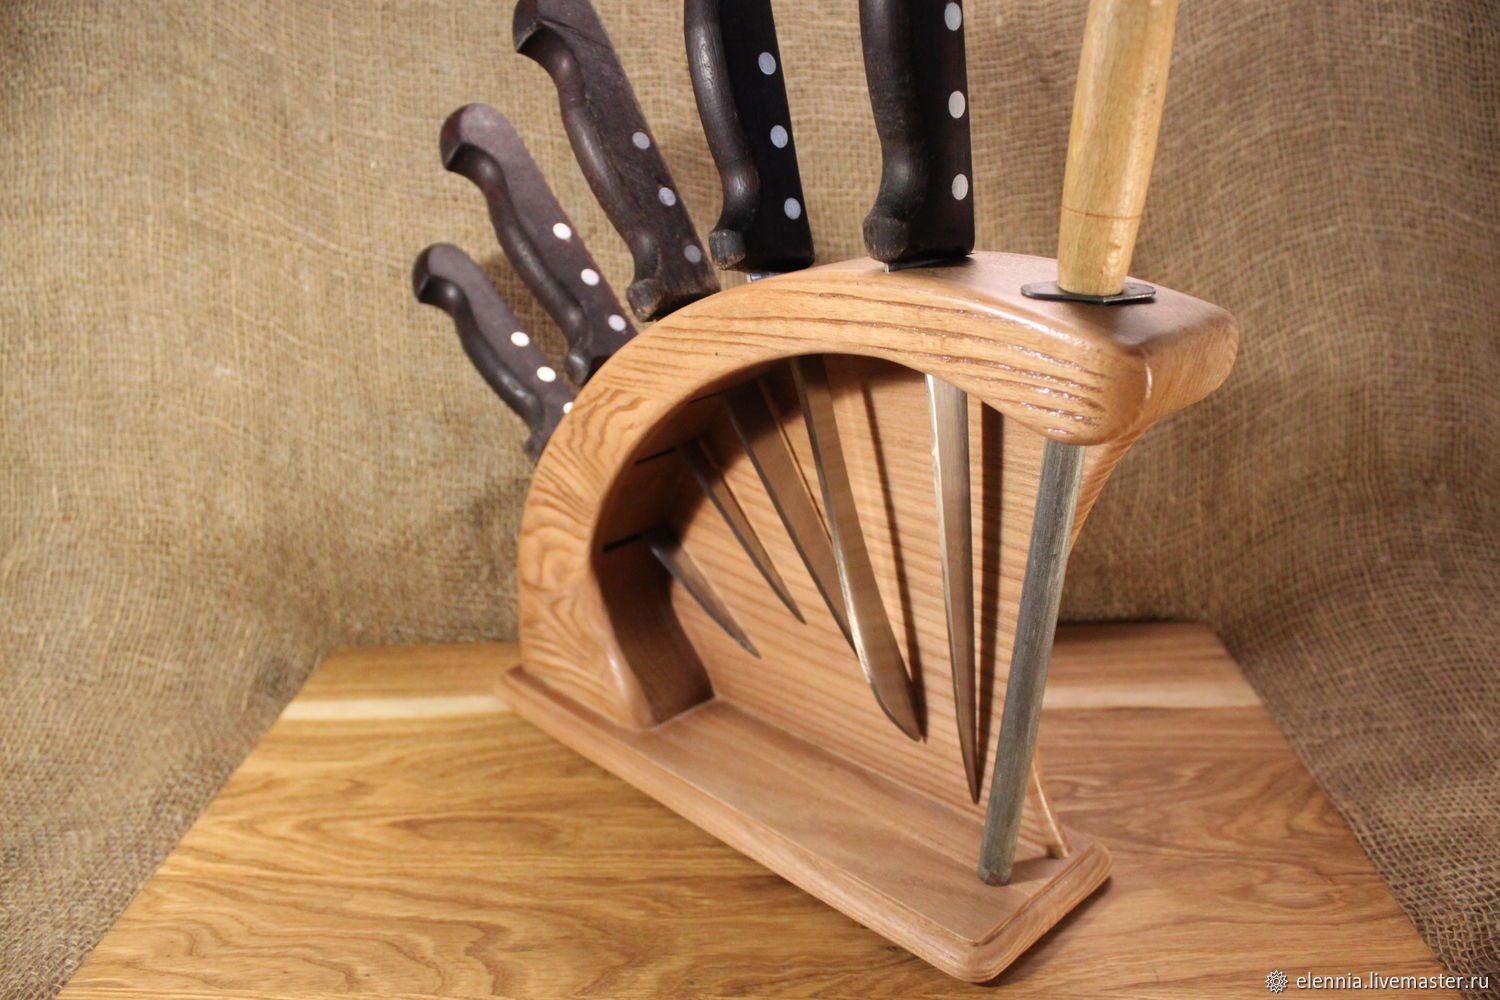 Izdeliya iz. Подставка для ножей. Подставка для ножей из дерева. Интересные изделия из дерева. Оригинальные изделия из дерева для кухни.